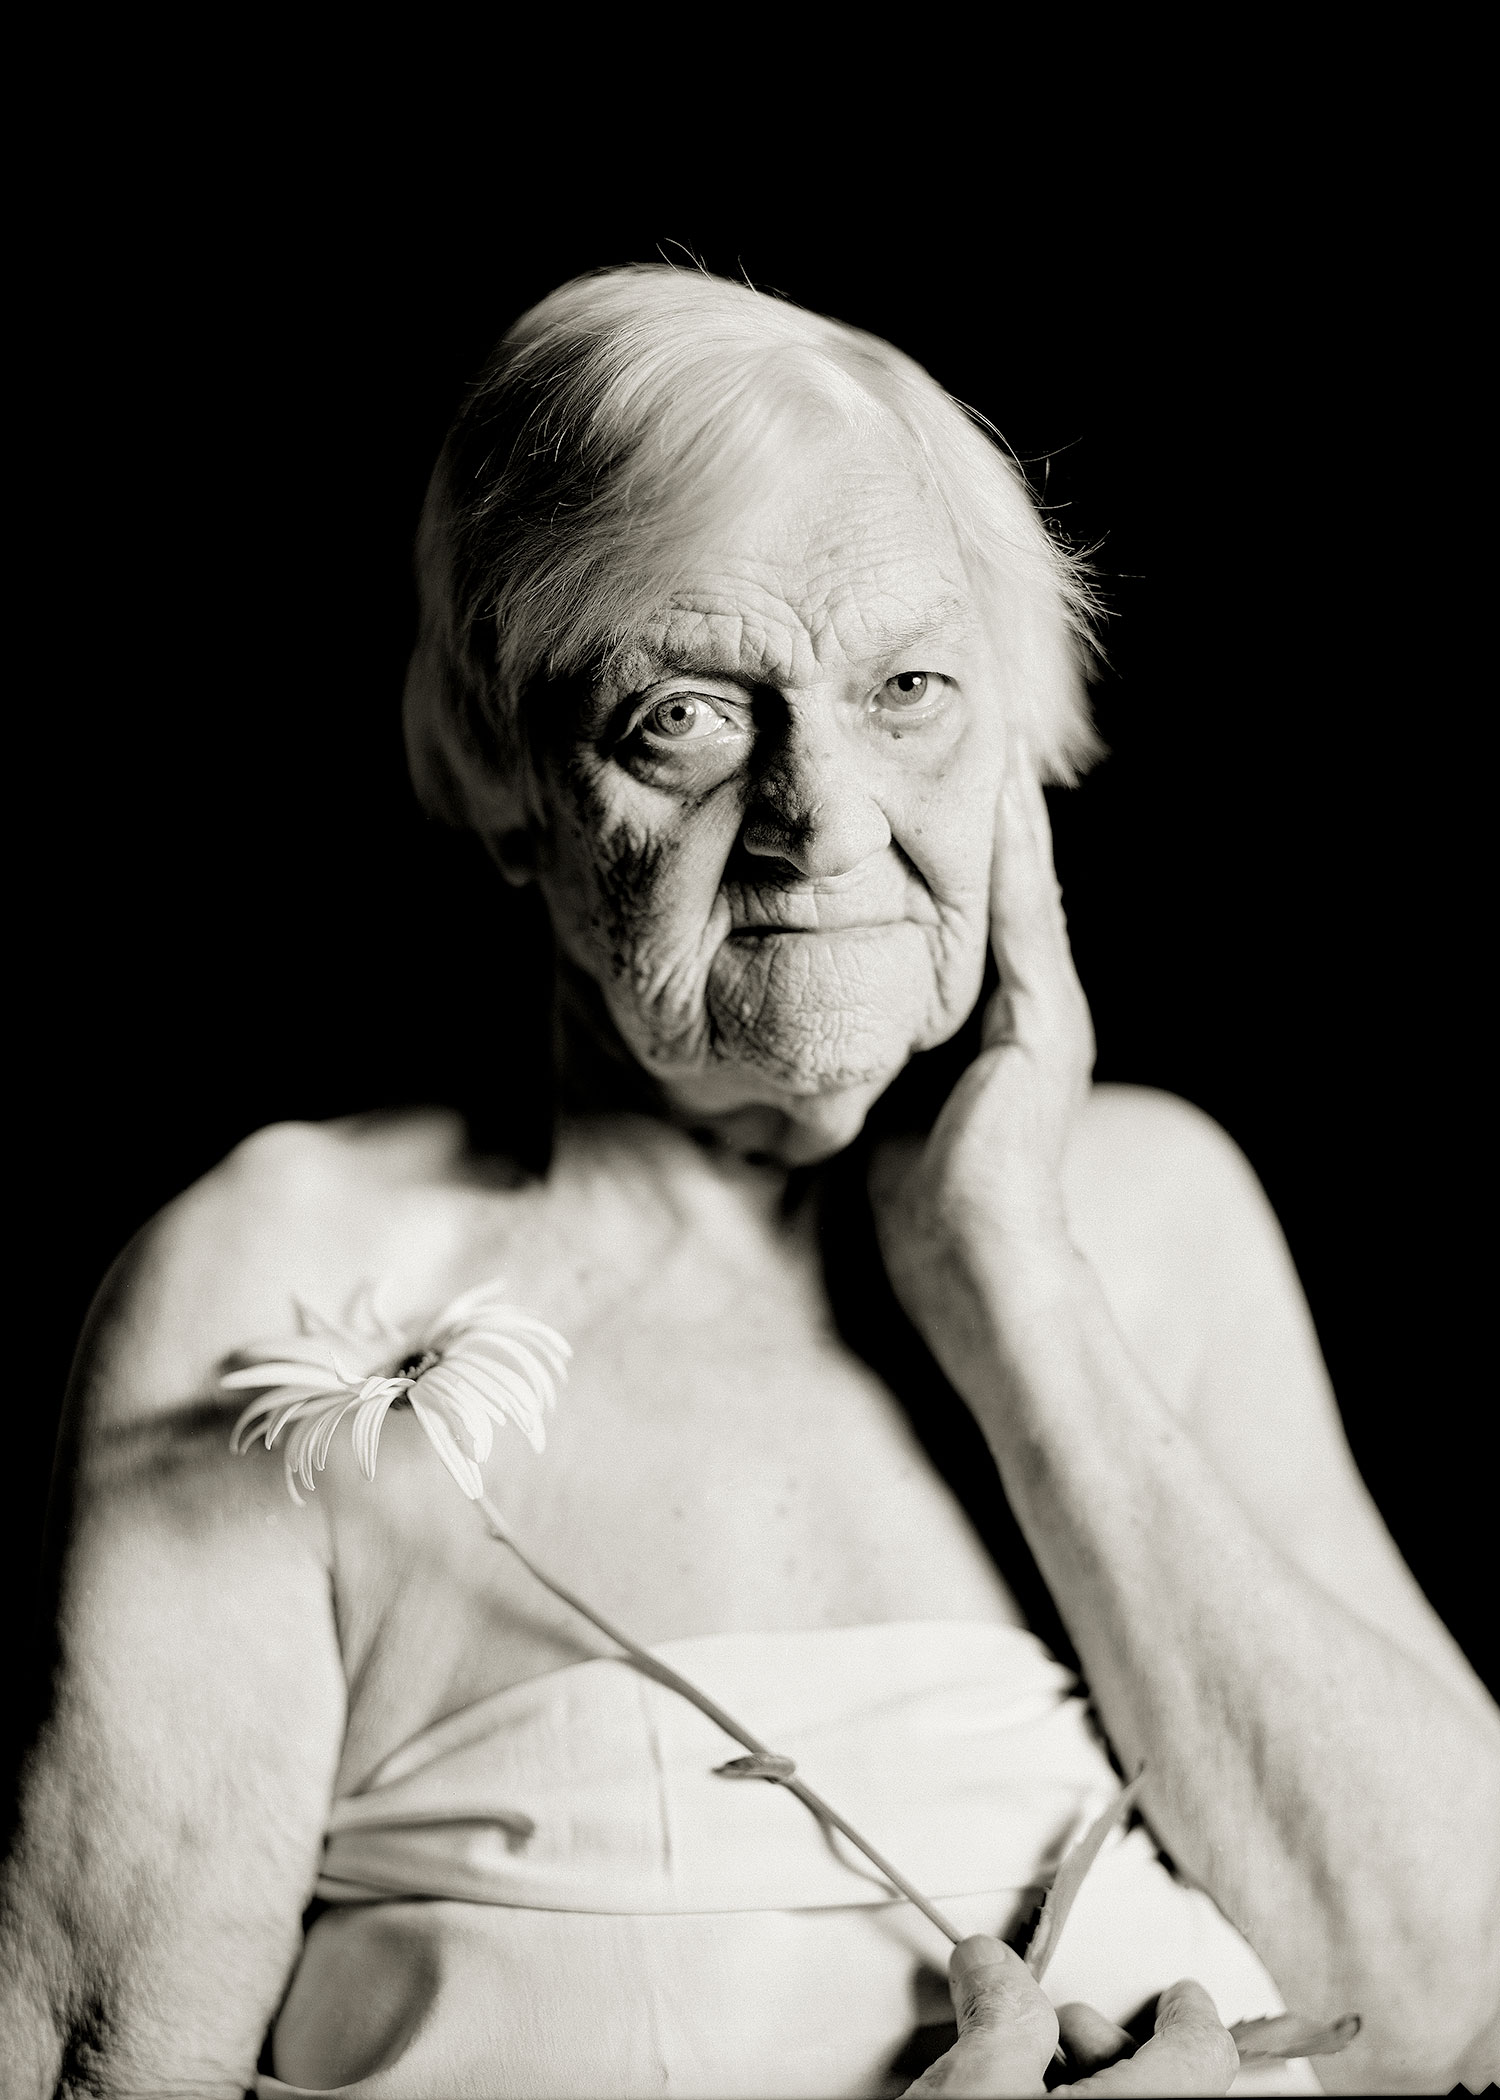  Olga 91 years old. 